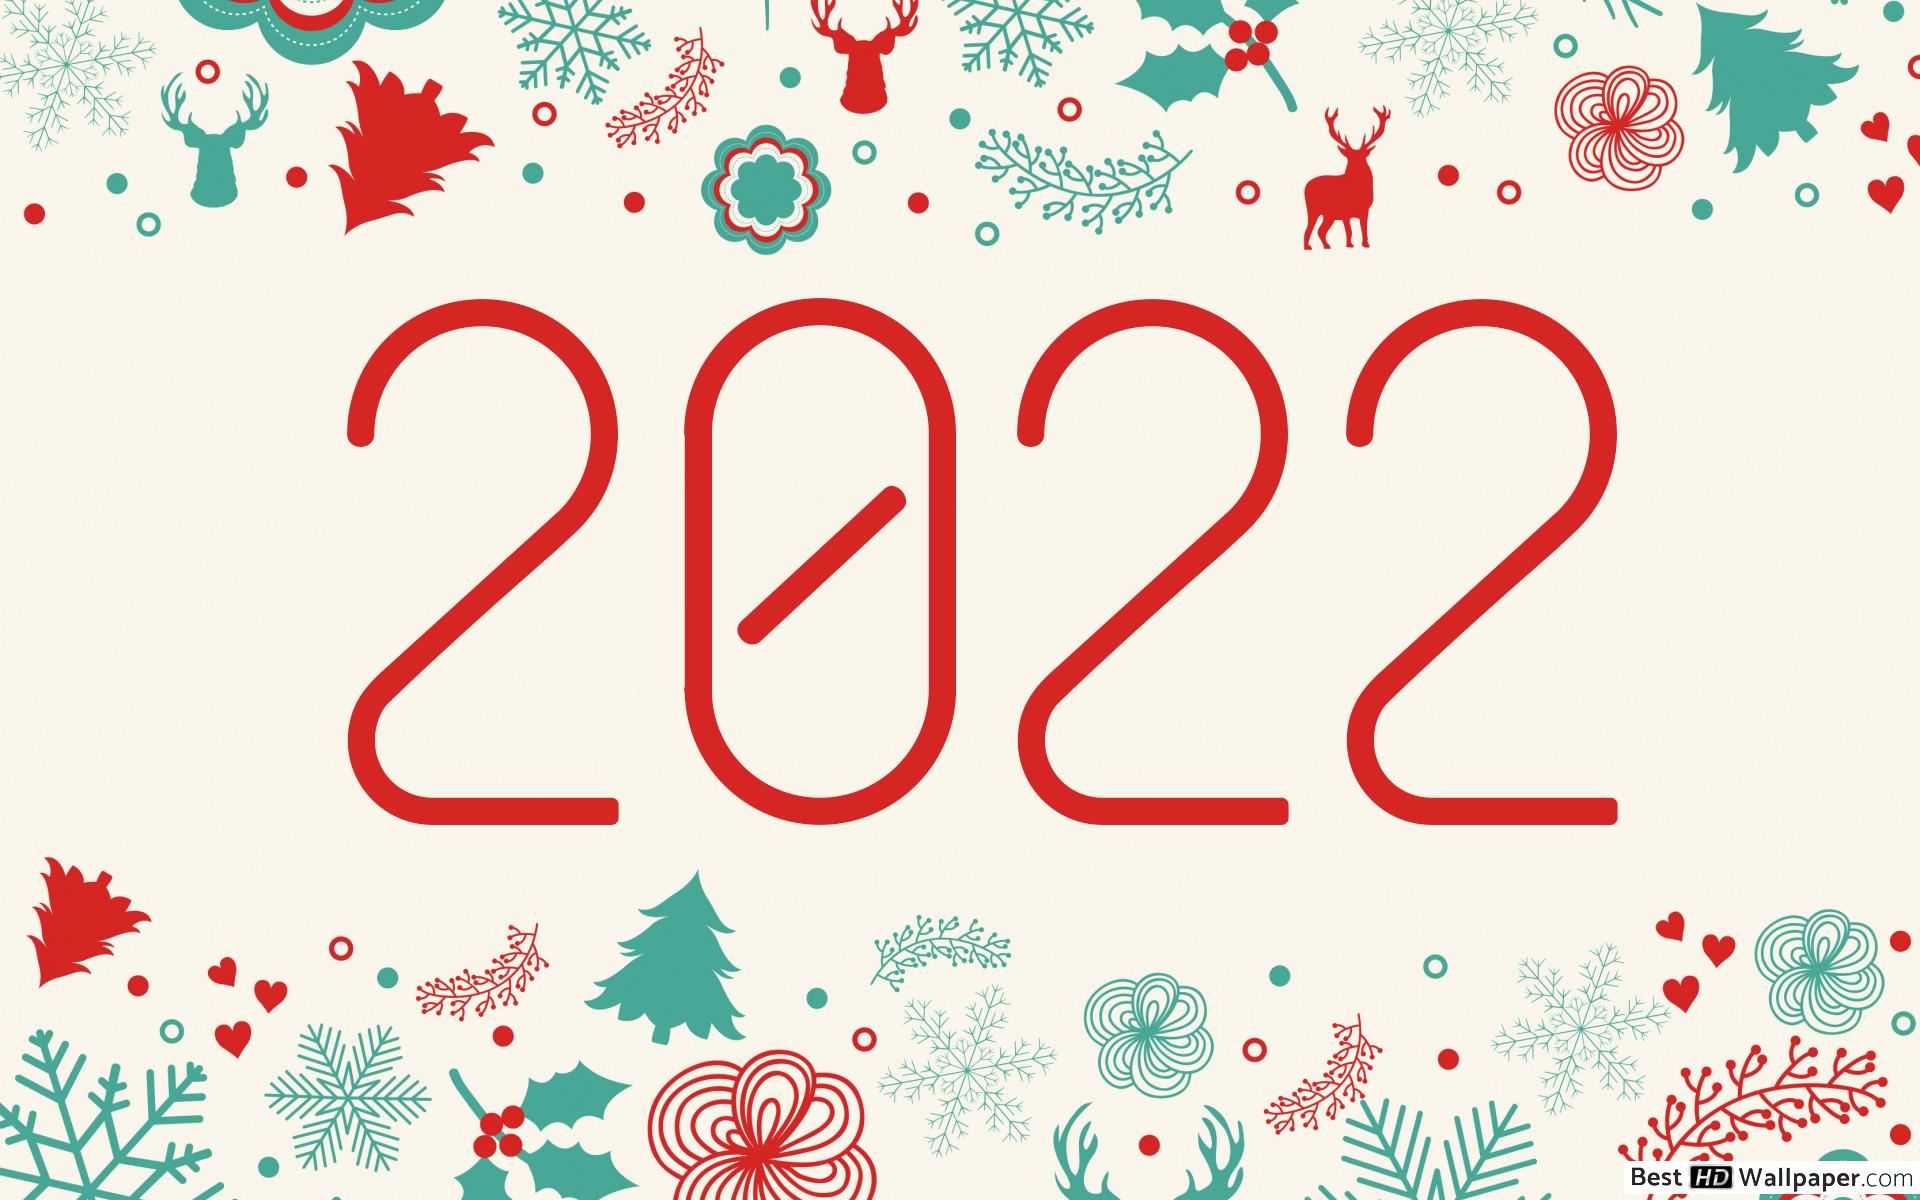 Wallpapers 2022 happy new year 2022 deer on the desktop